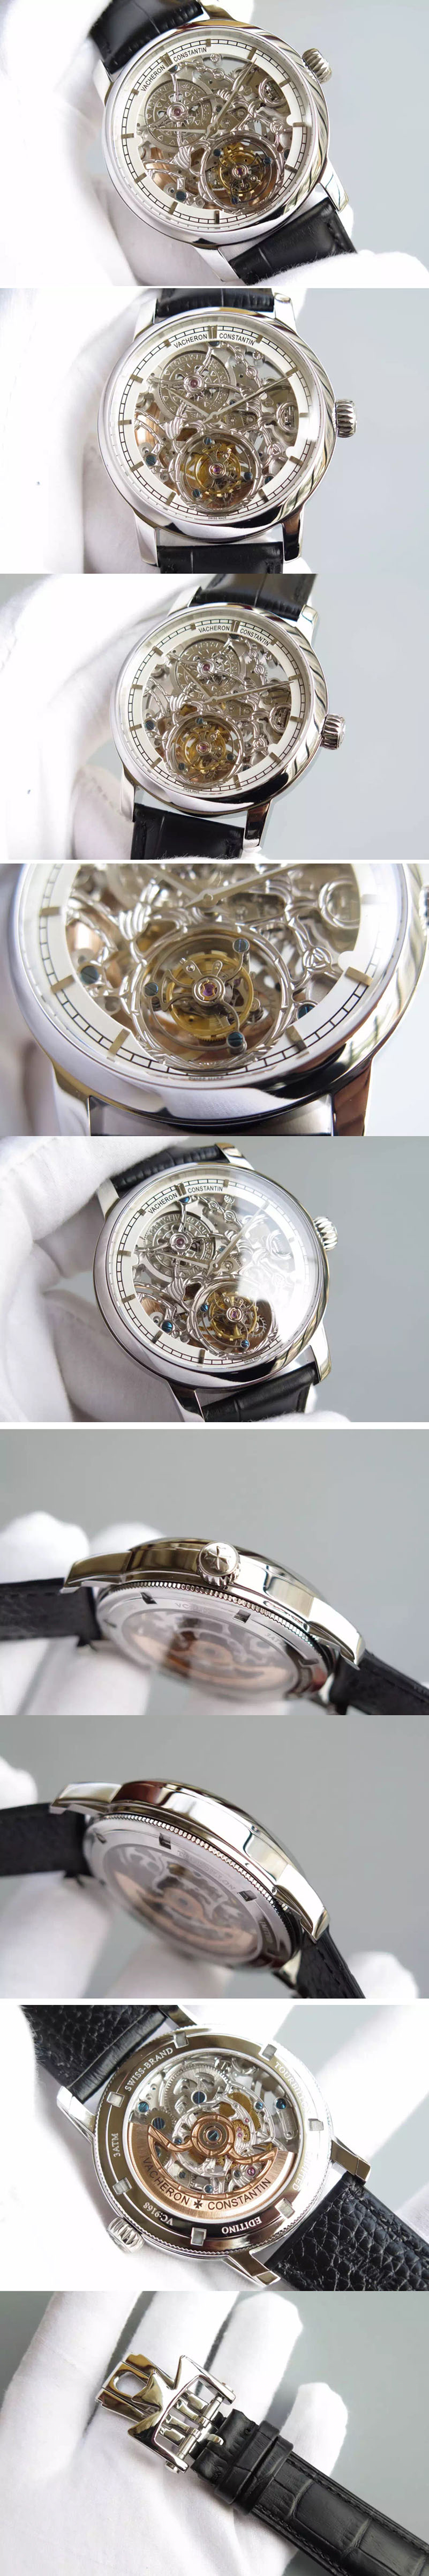 Replica Vacheron Constantin  Watches